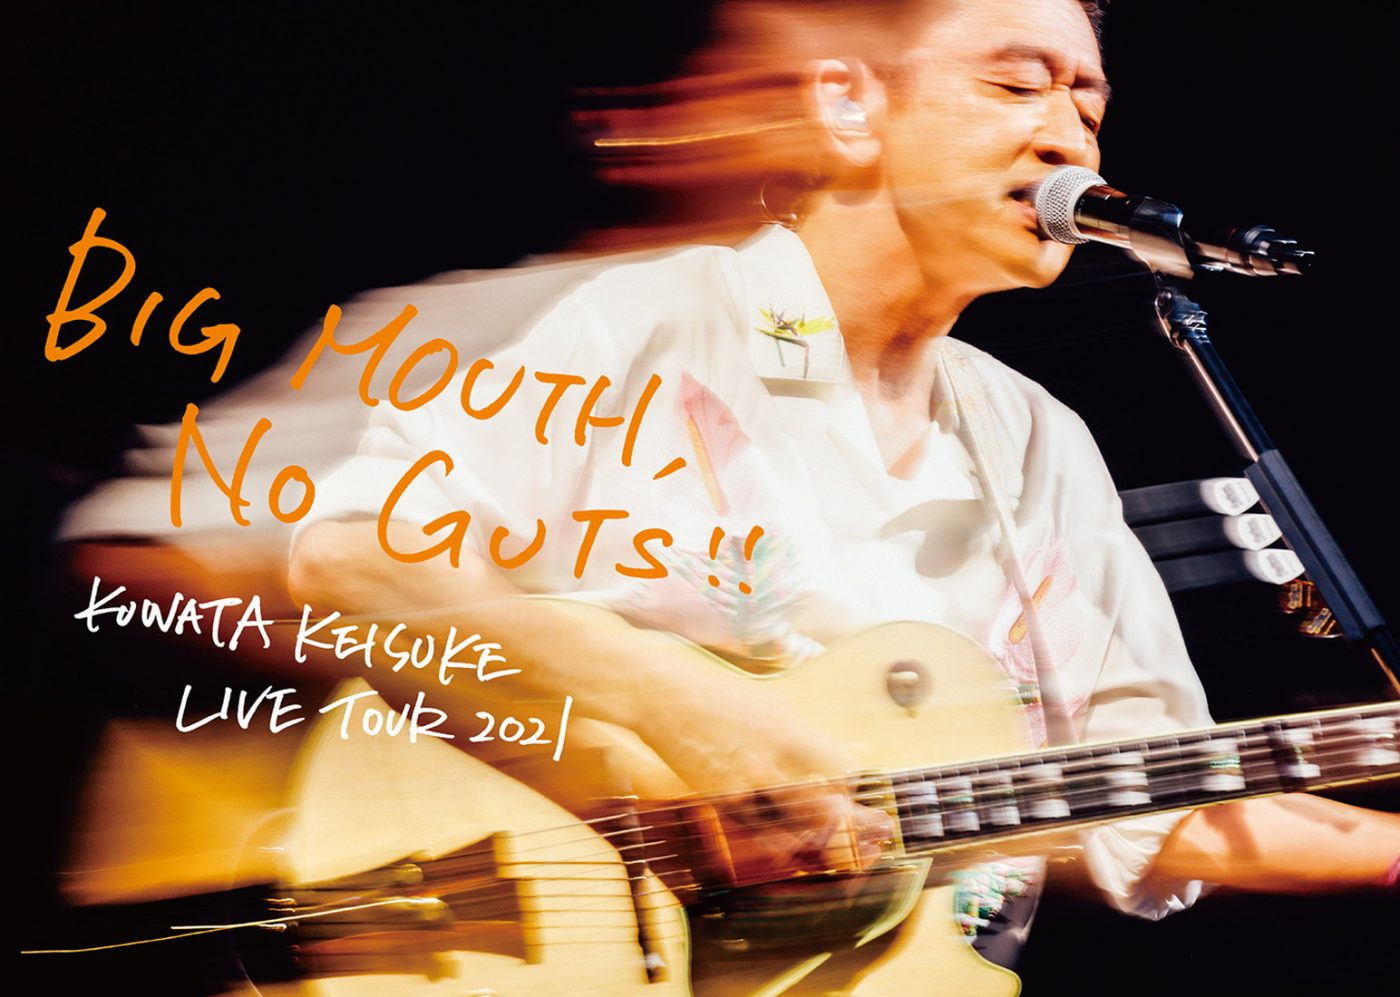 桑田佳祐、『BIG MOUTH, NO GUTS!!』生産限定盤の特典に“桑田目線”のライブ映像収録